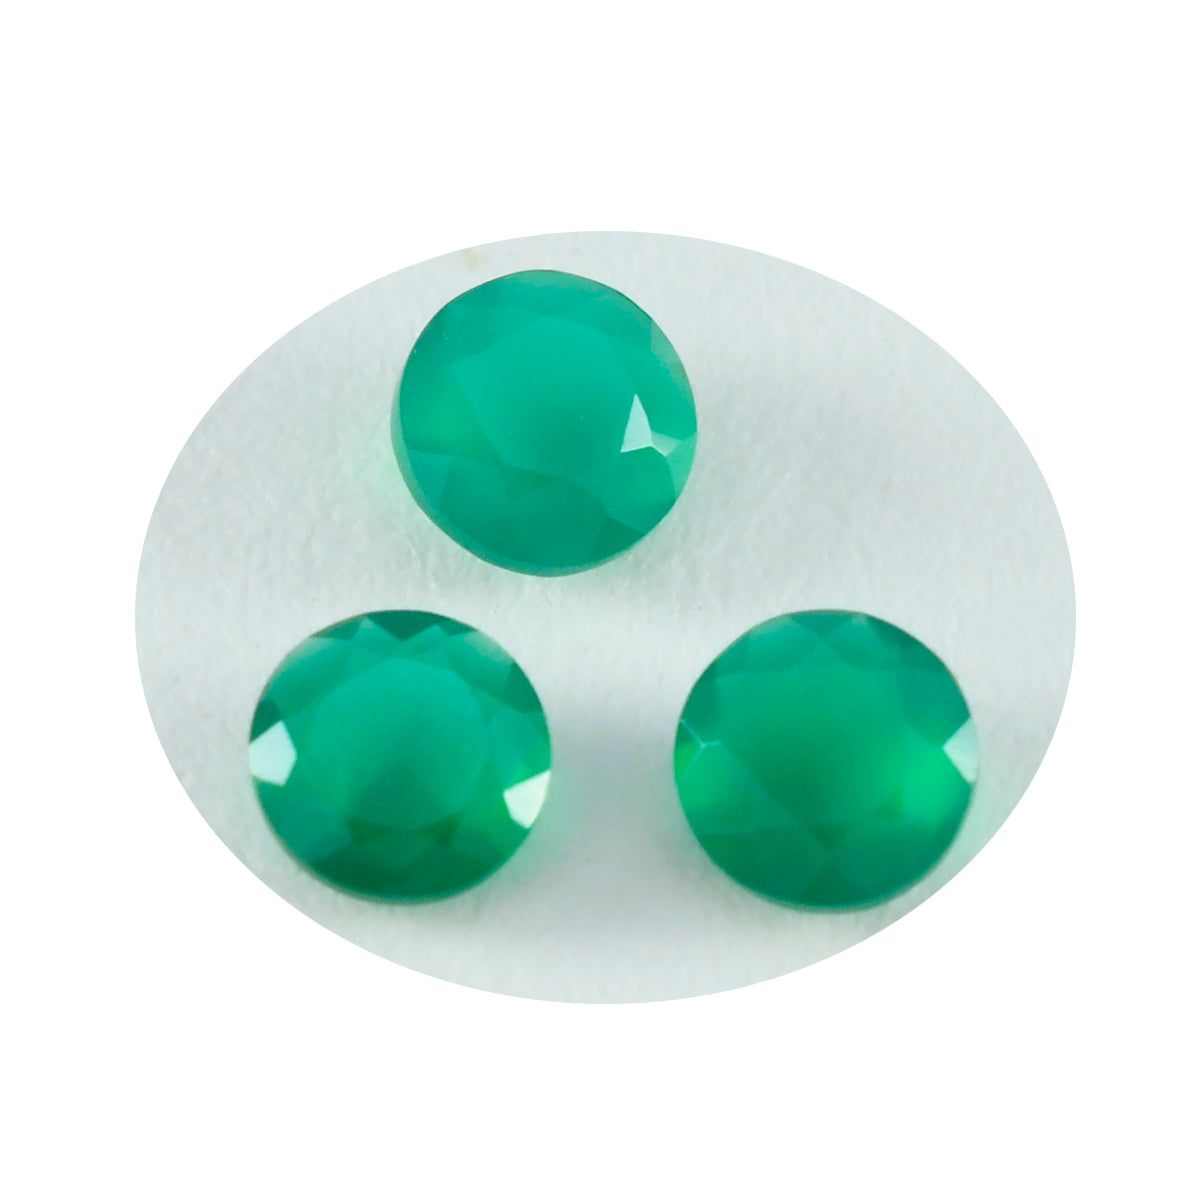 Riyogems 1pc véritable jaspe vert à facettes 6x6mm forme ronde jolie qualité gemme en vrac